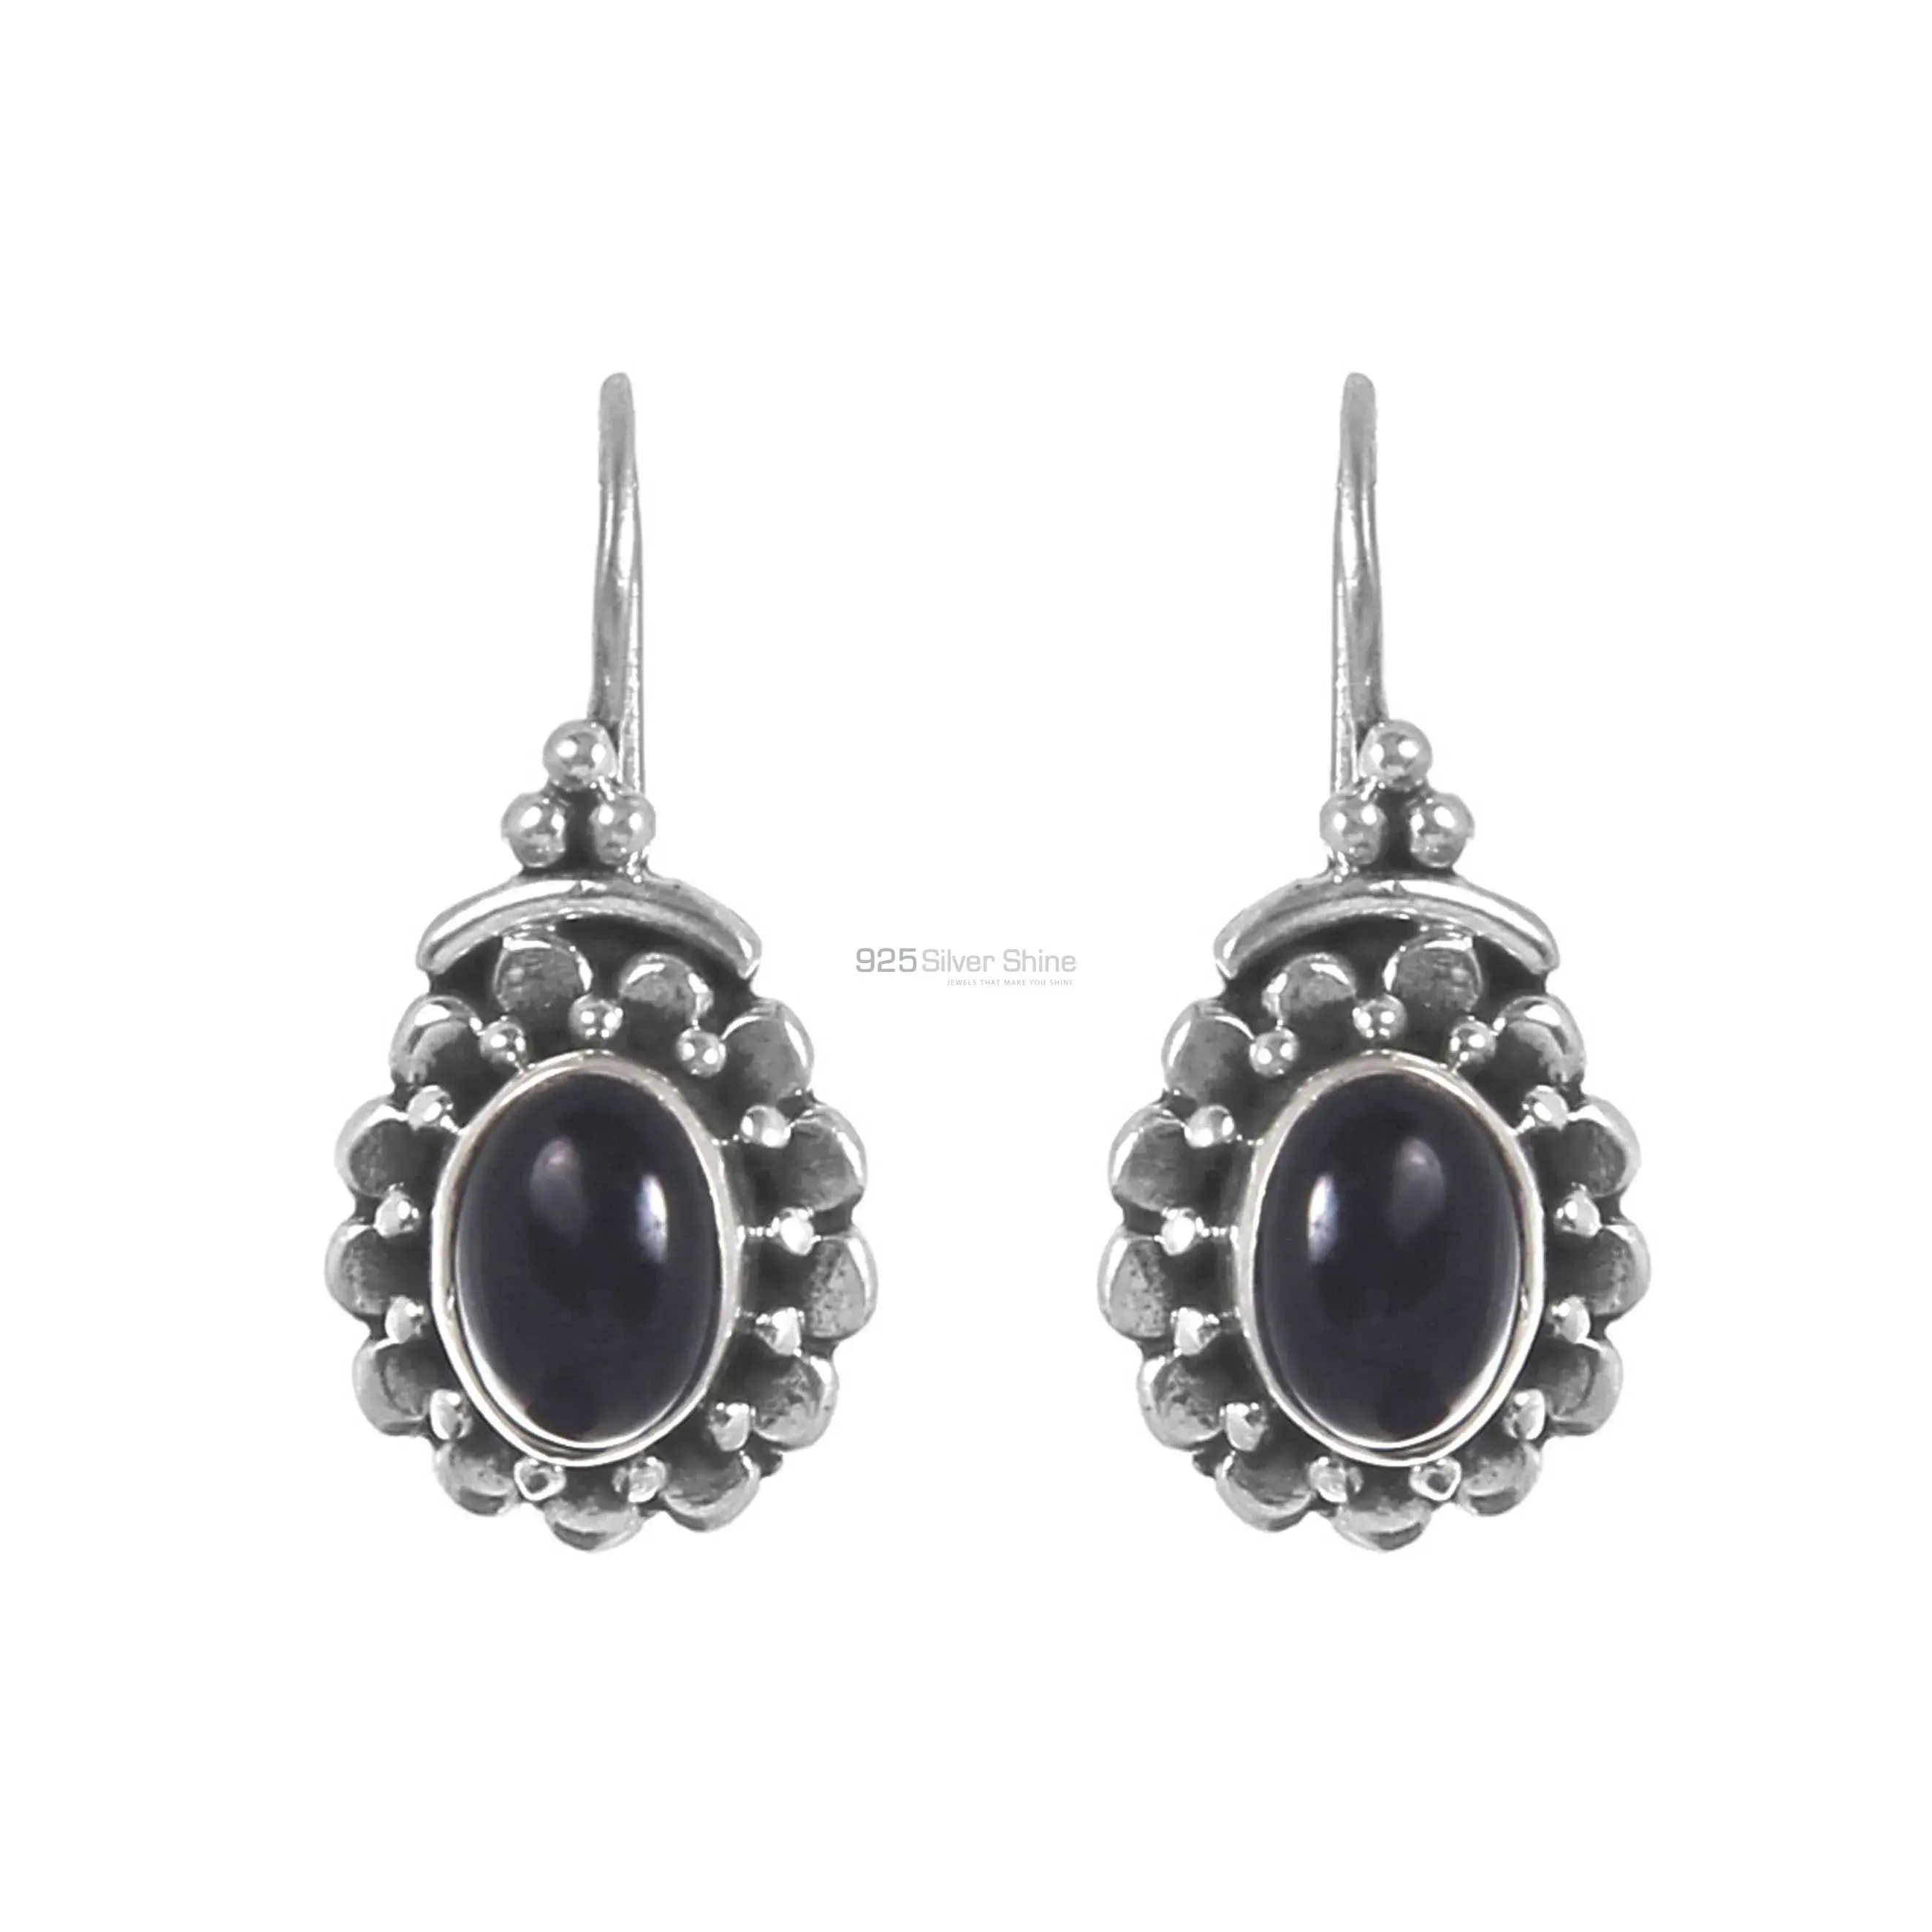 Black Onyx Gemstone Earrings In Sterling Silver Jewelry 925SE219